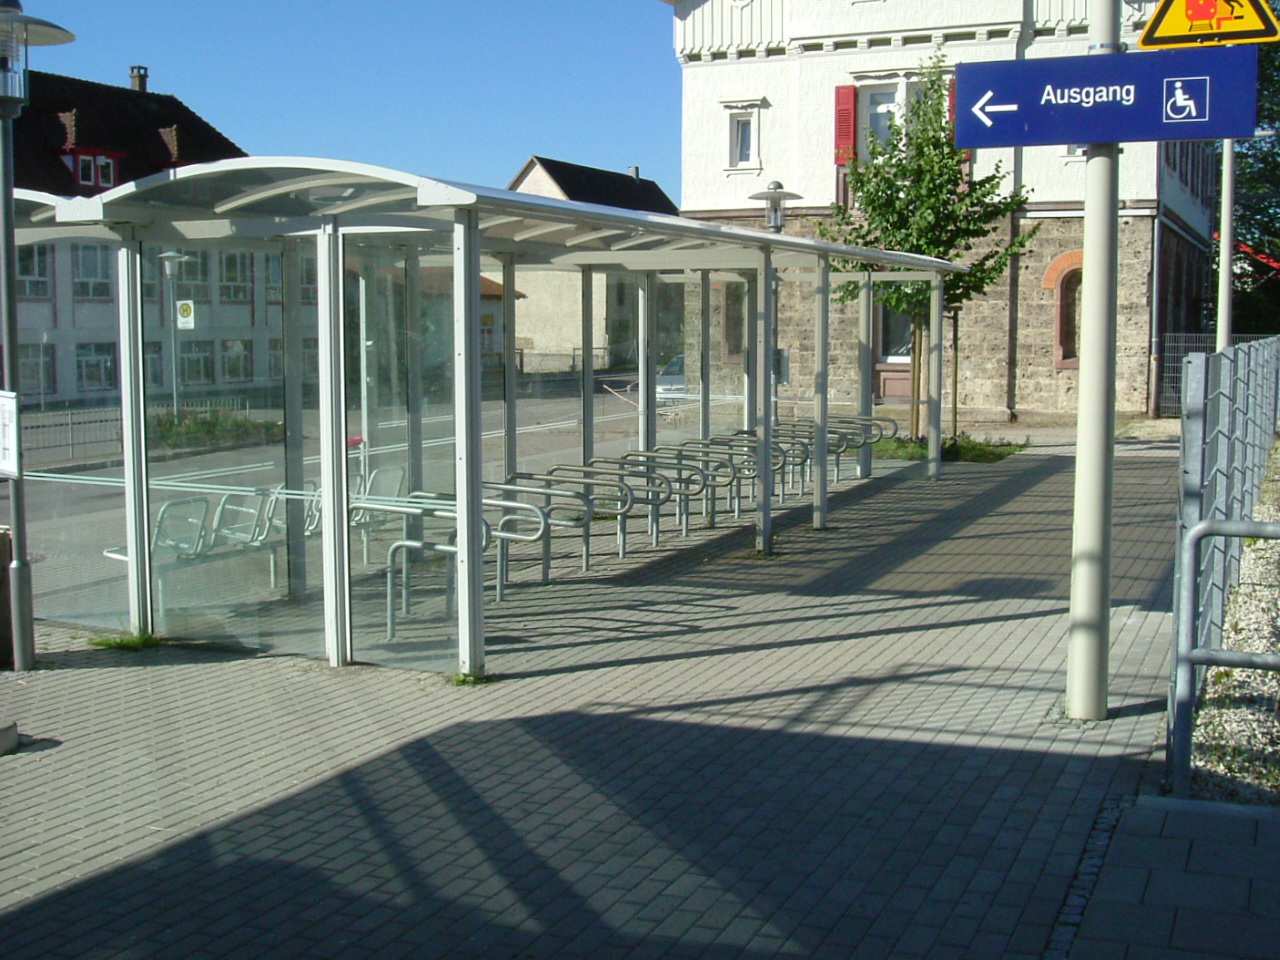 ábra Vasúti peron mellett elhelyezett B+R kerékpártároló Németországban Picur minden reggel fél nyolckor indul el biciklivel otthonról, nyolc perc múlva már a vasútállomáson van, ahol a peron mellett